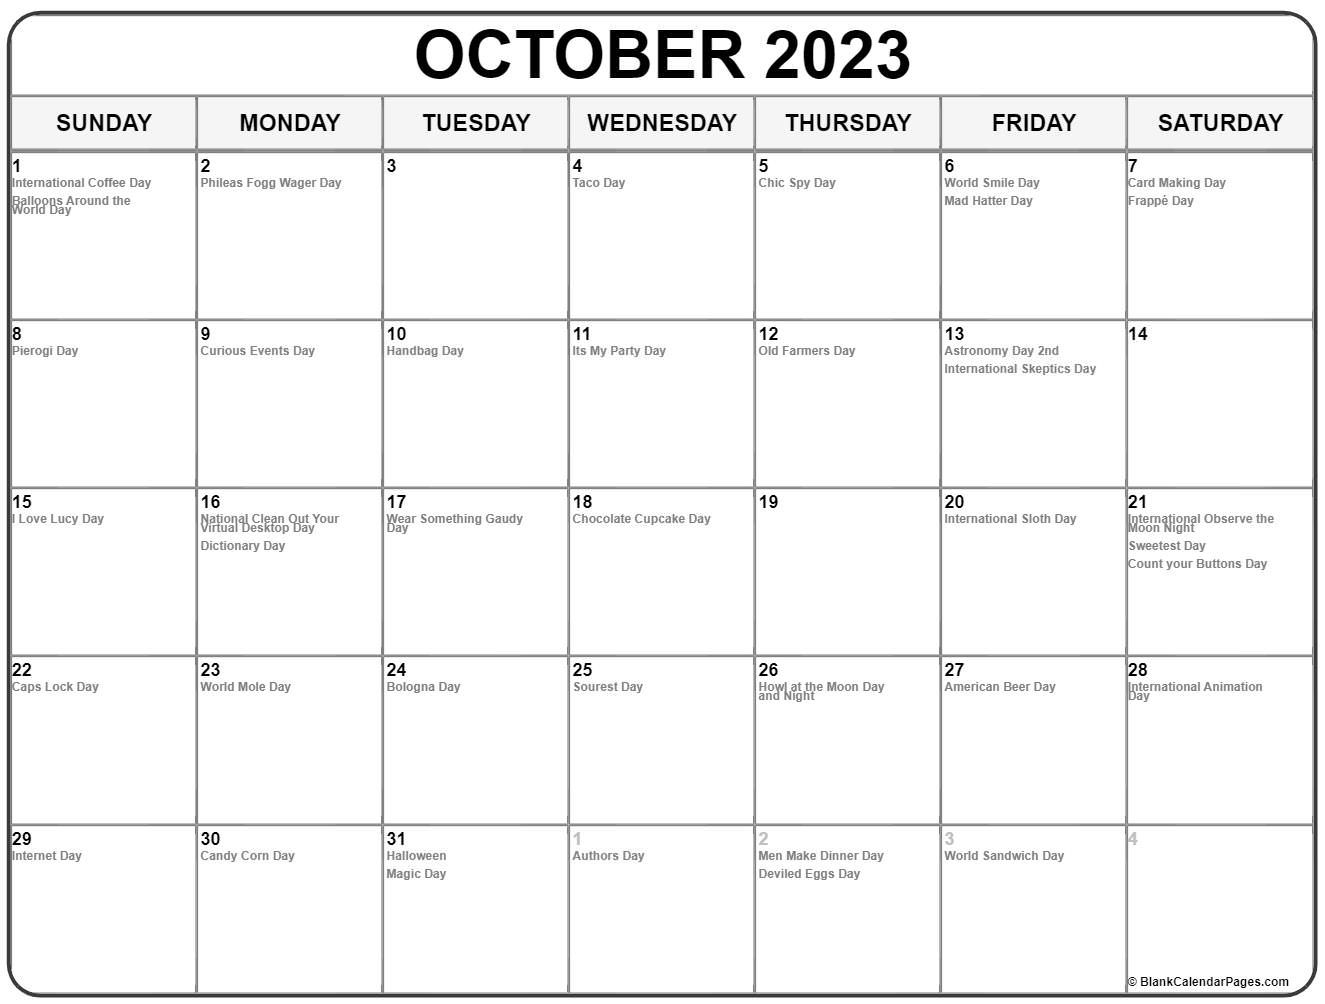 october-2023-calendar-special-days-get-calendar-2023-update